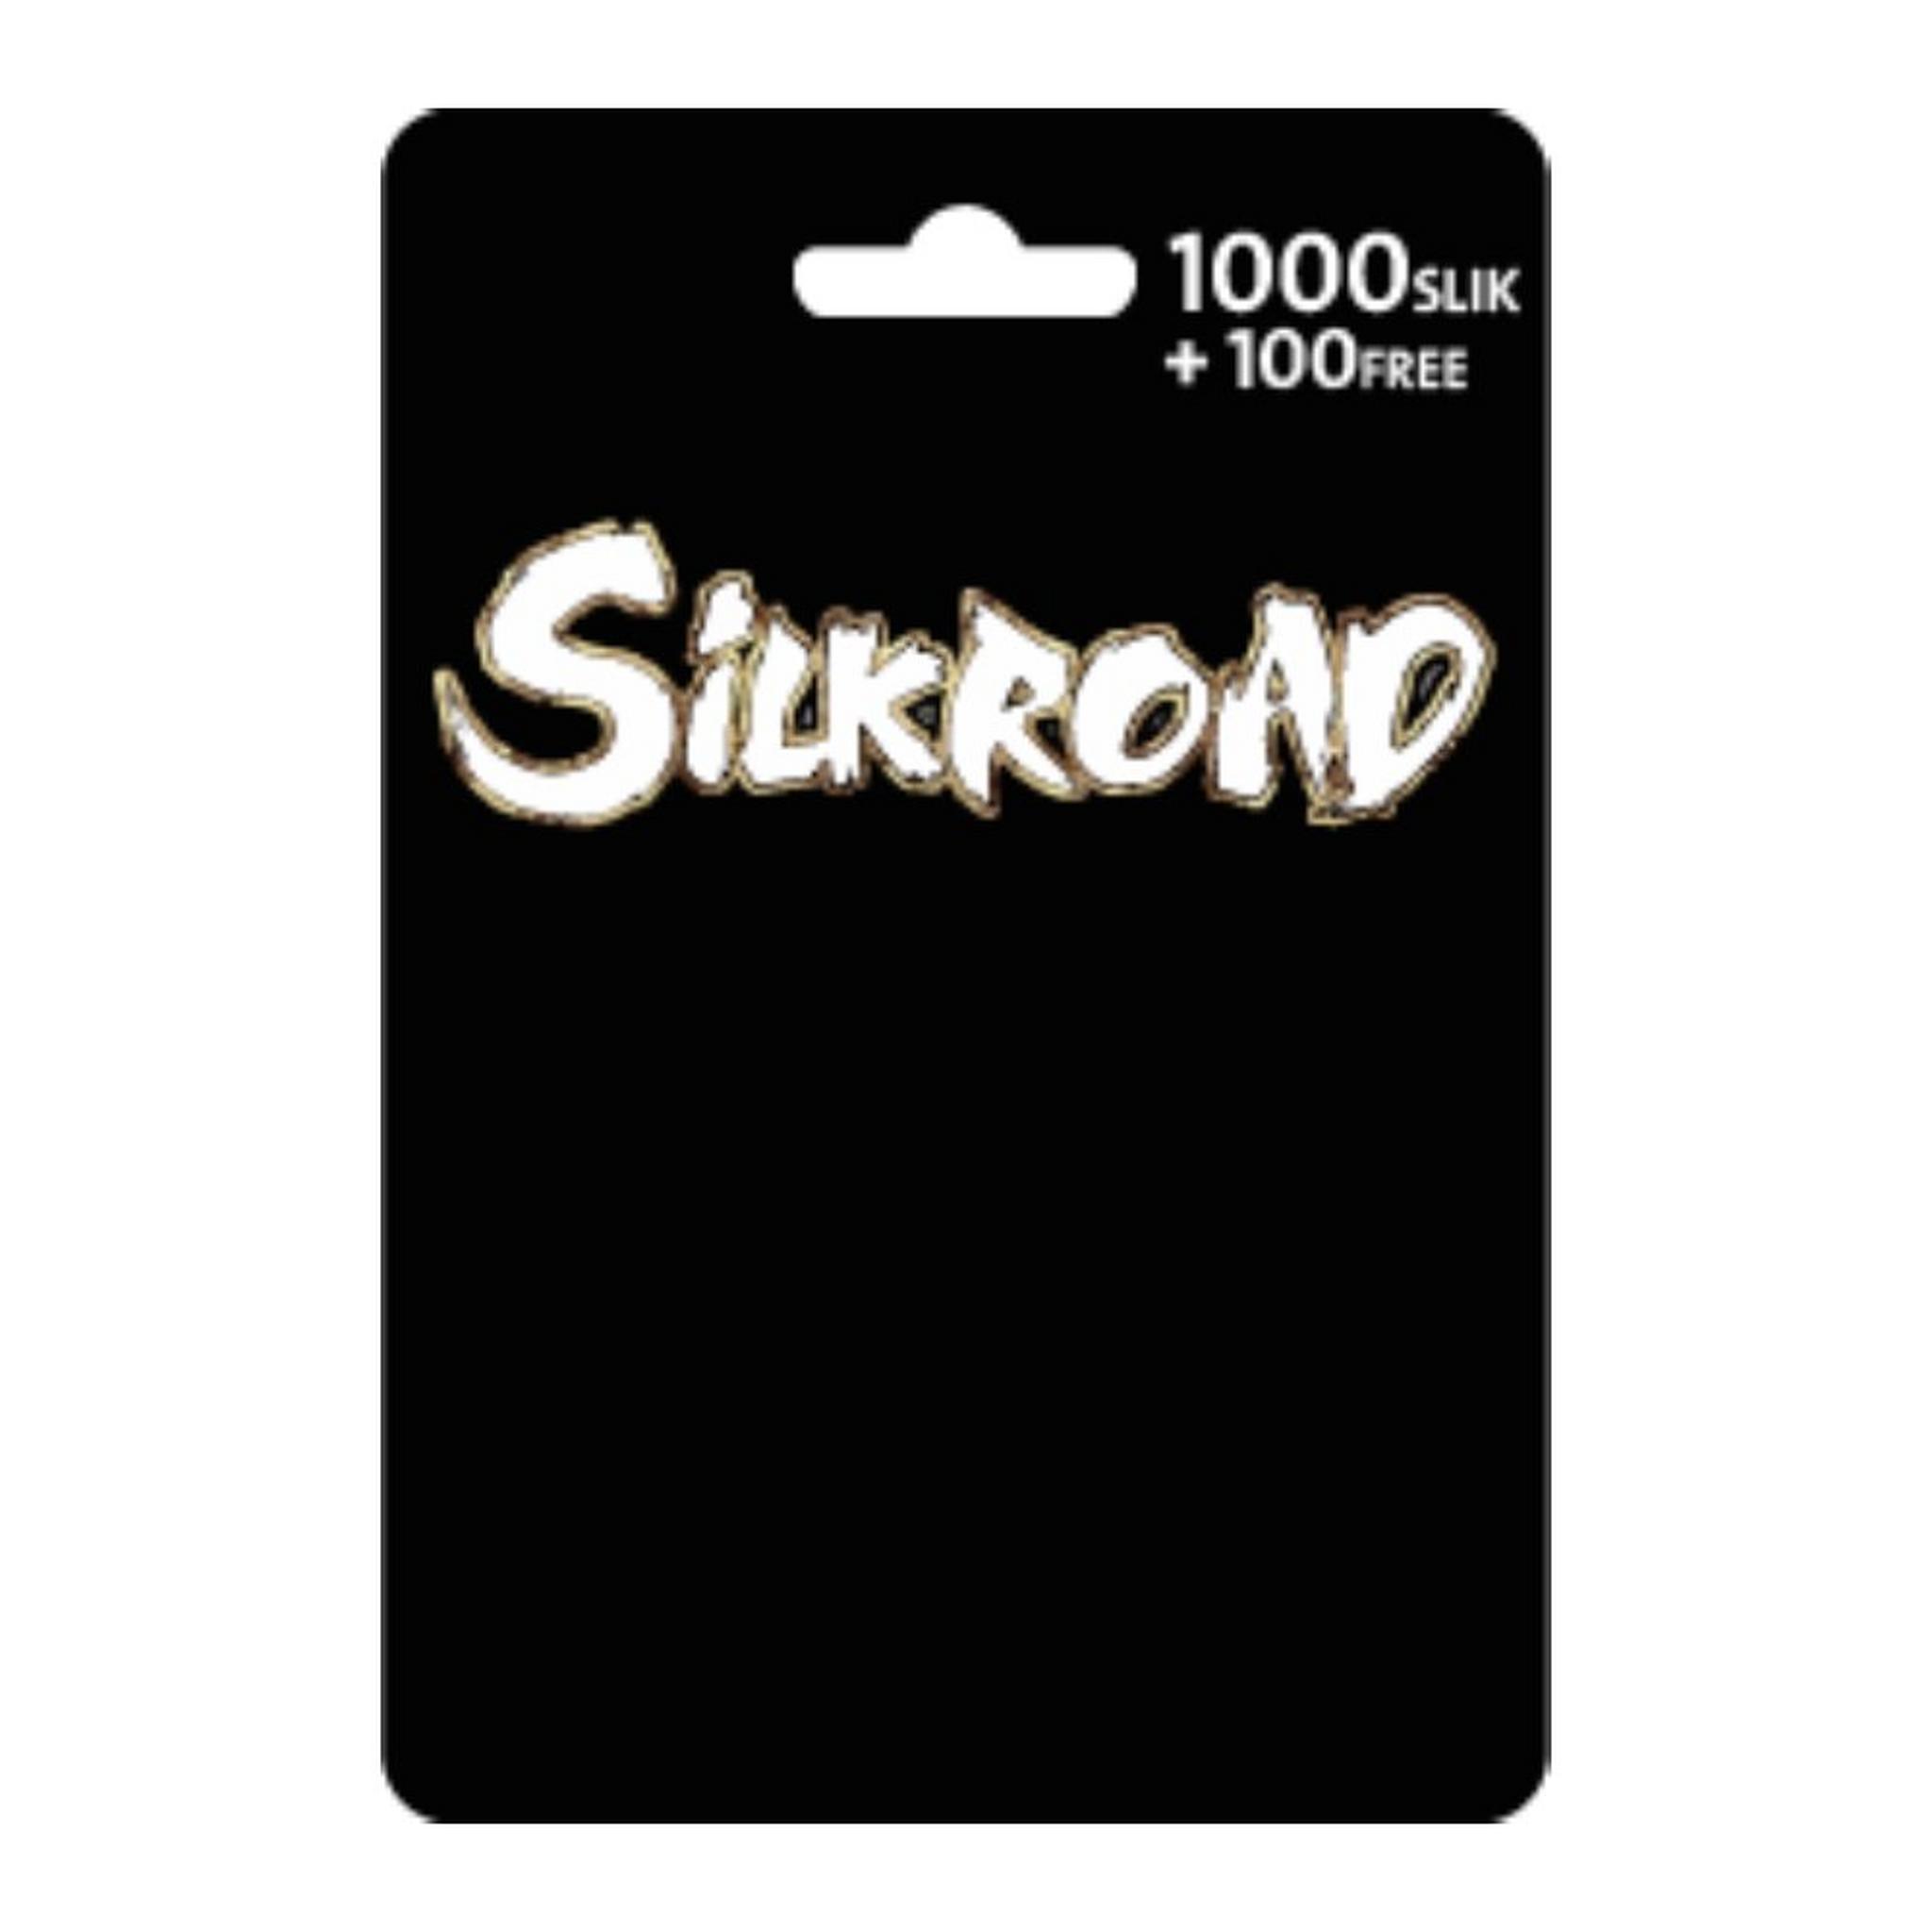 بطاقة لعبة سلك رود - 1000  نقطة + 100 نقطة مجانا